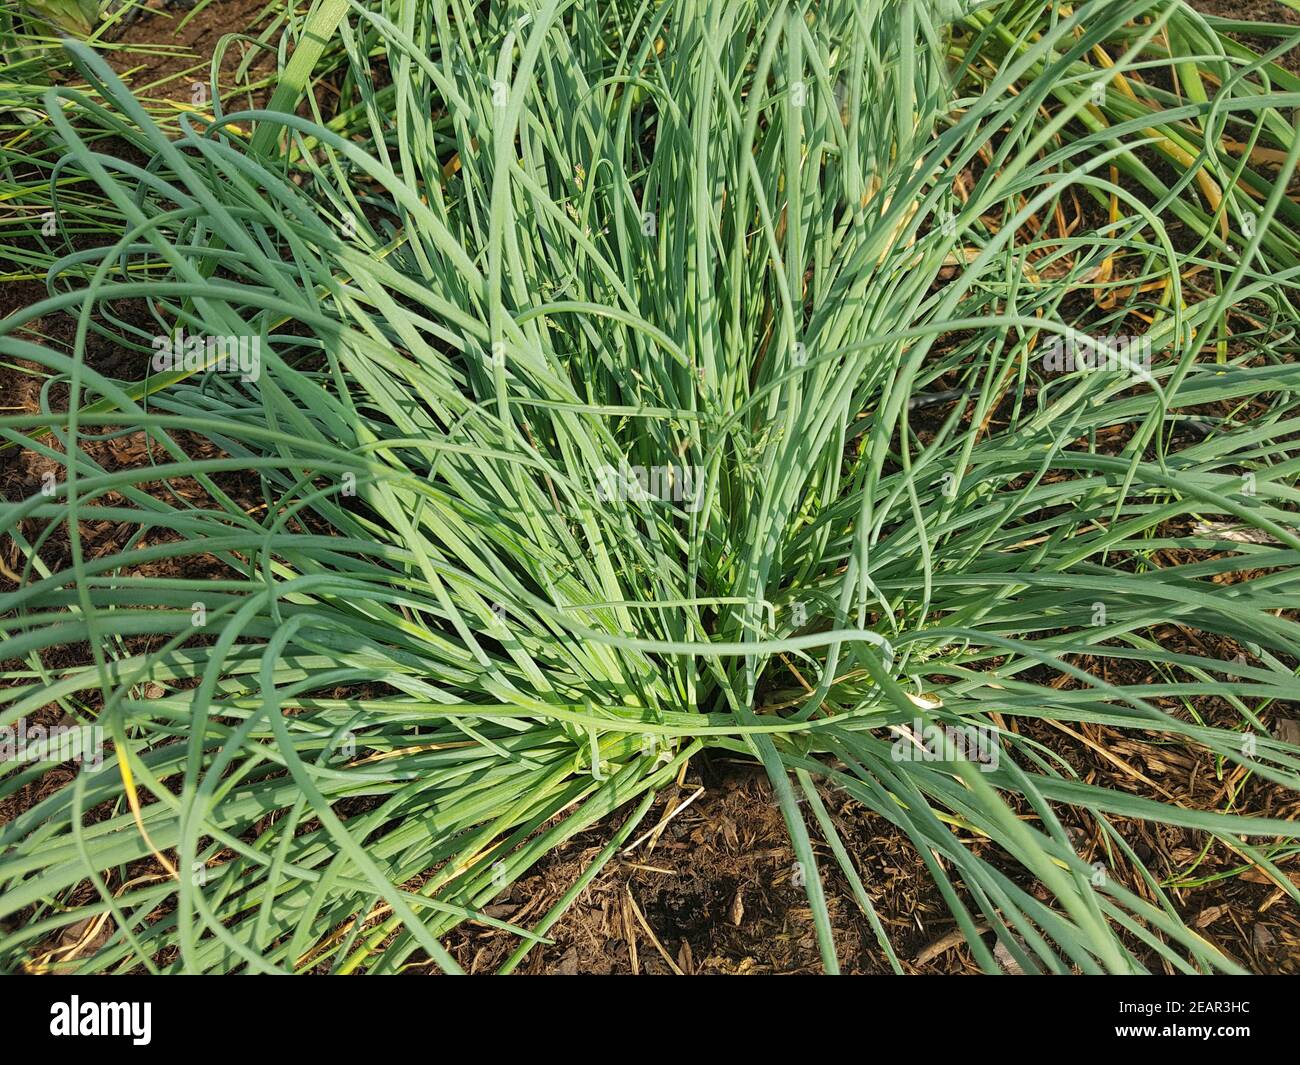 Schnittlauch weisser, Allium schoenoprasum, Elbe, Kraeuter, Heilpflanze Foto Stock